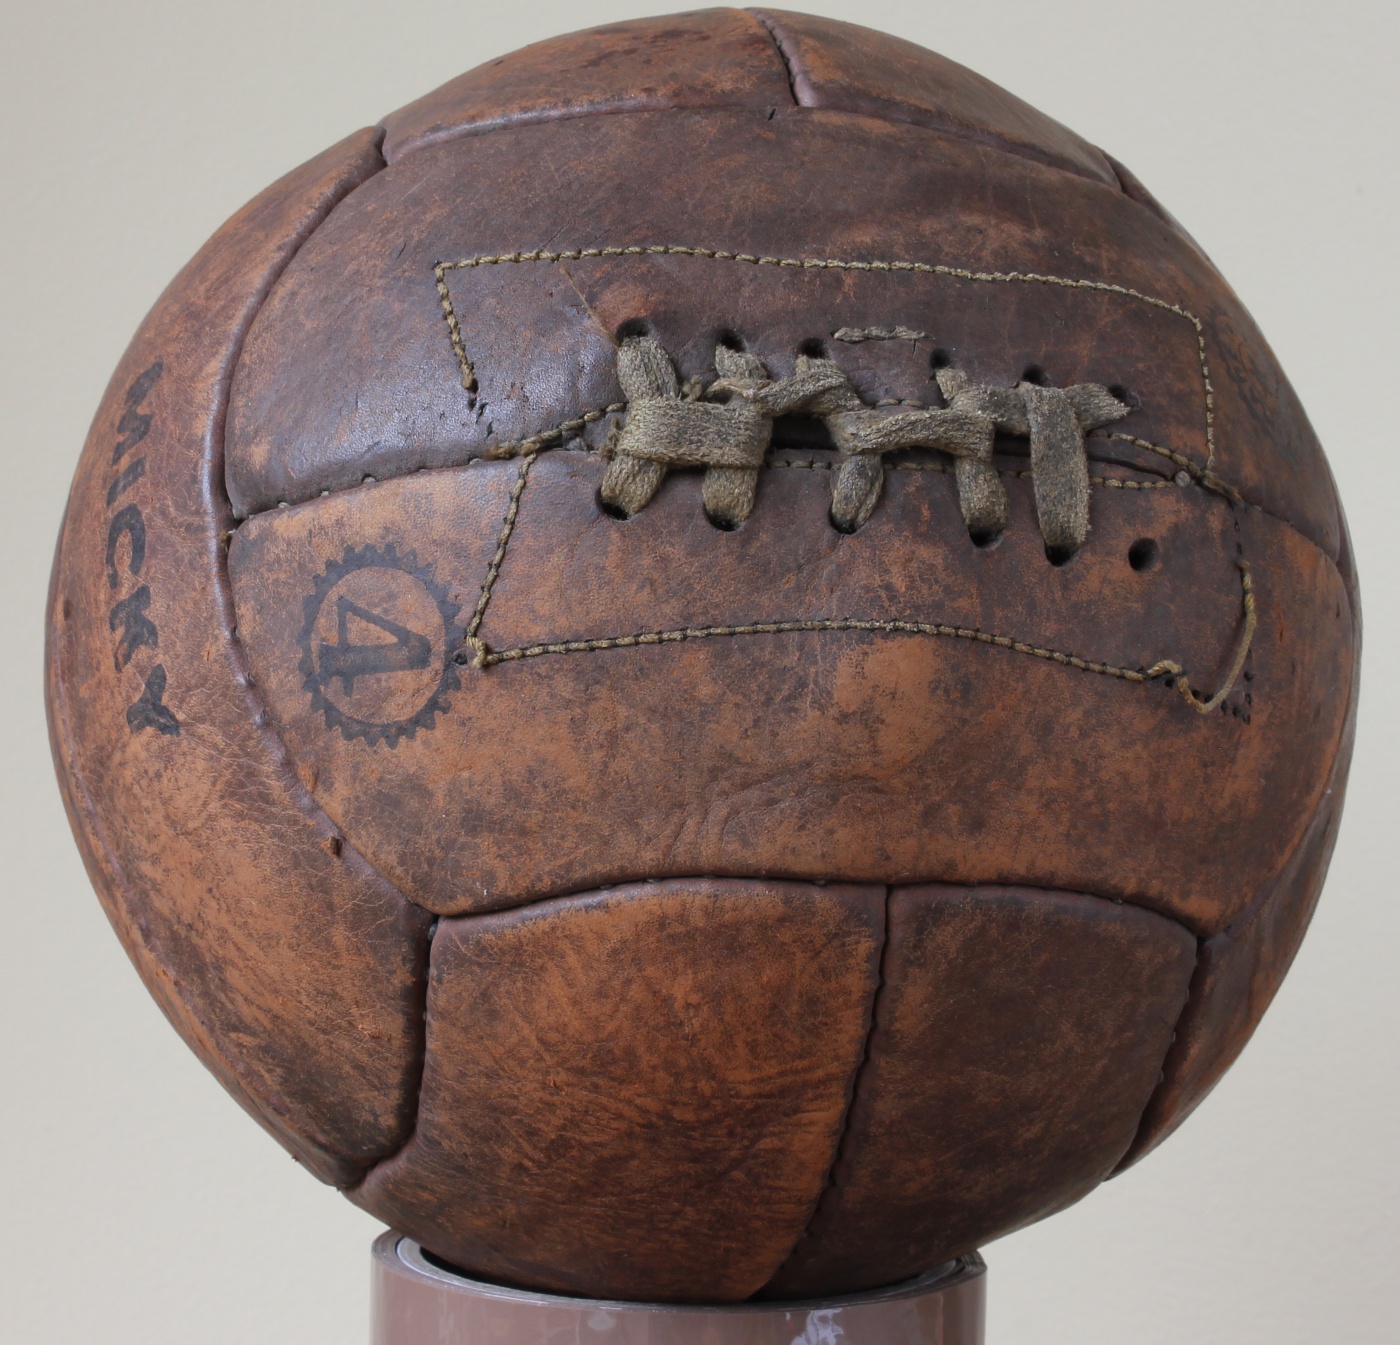 Micky-Vintage-Leather-Football-1.jpg